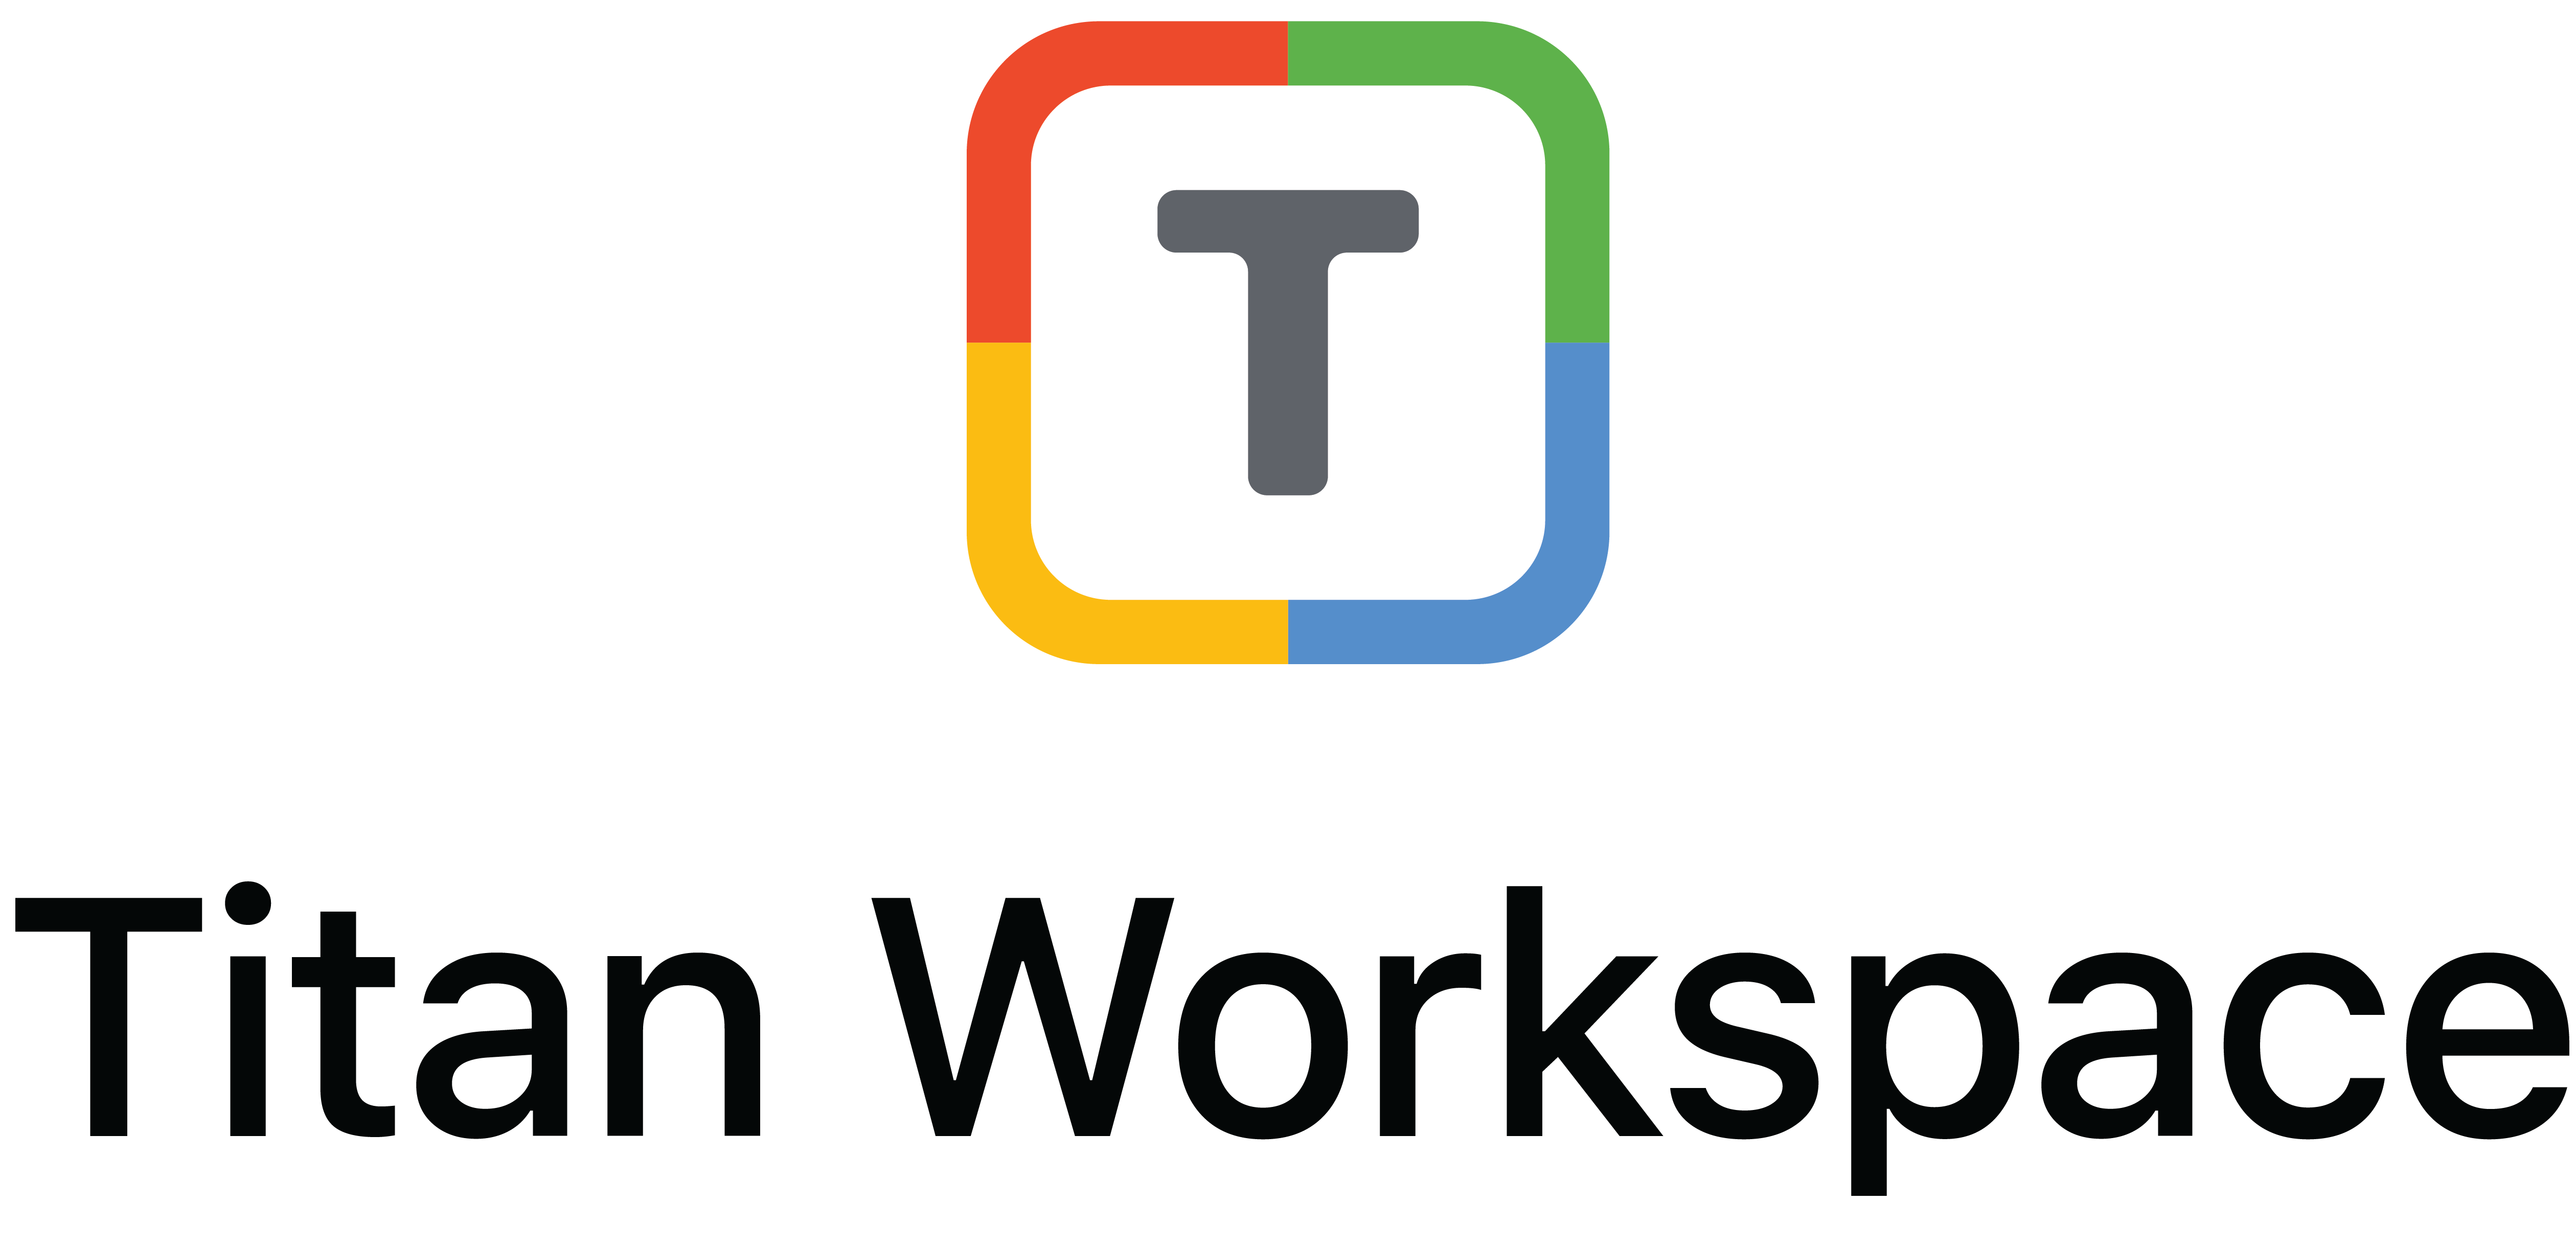 Titan Workspace Partner